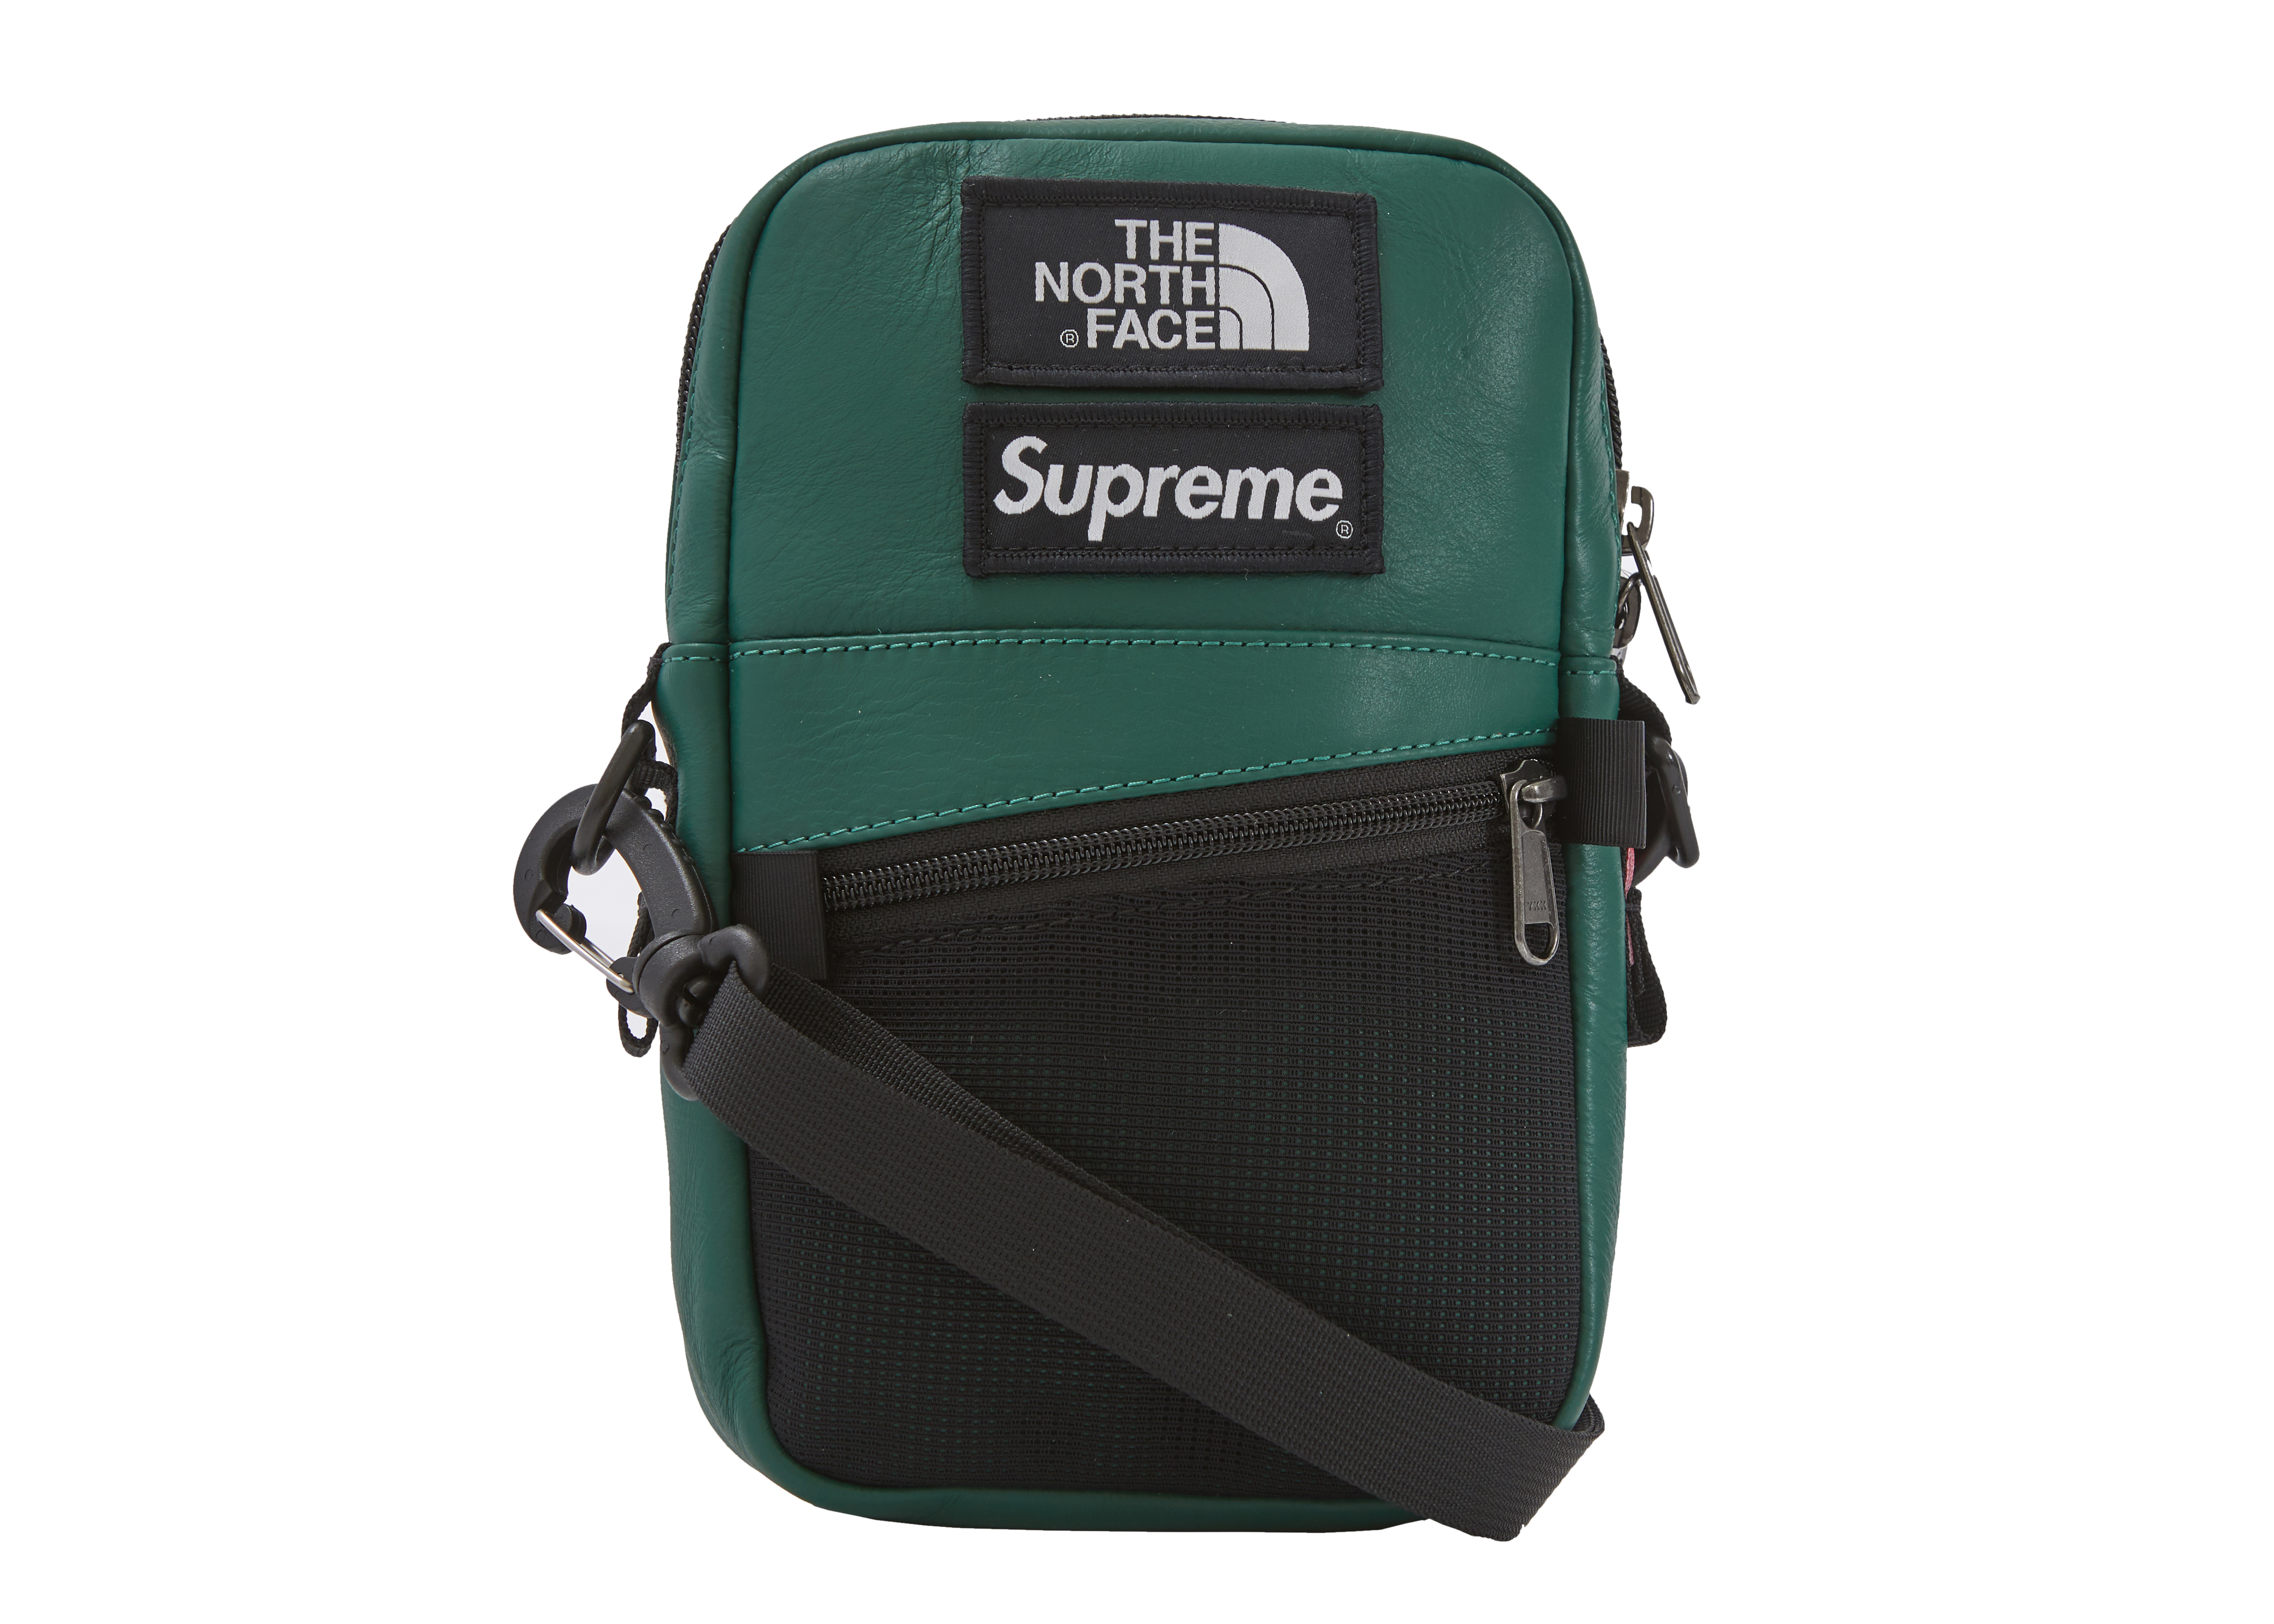 Supreme The North Face Leather Shoulder Bag Dark Green